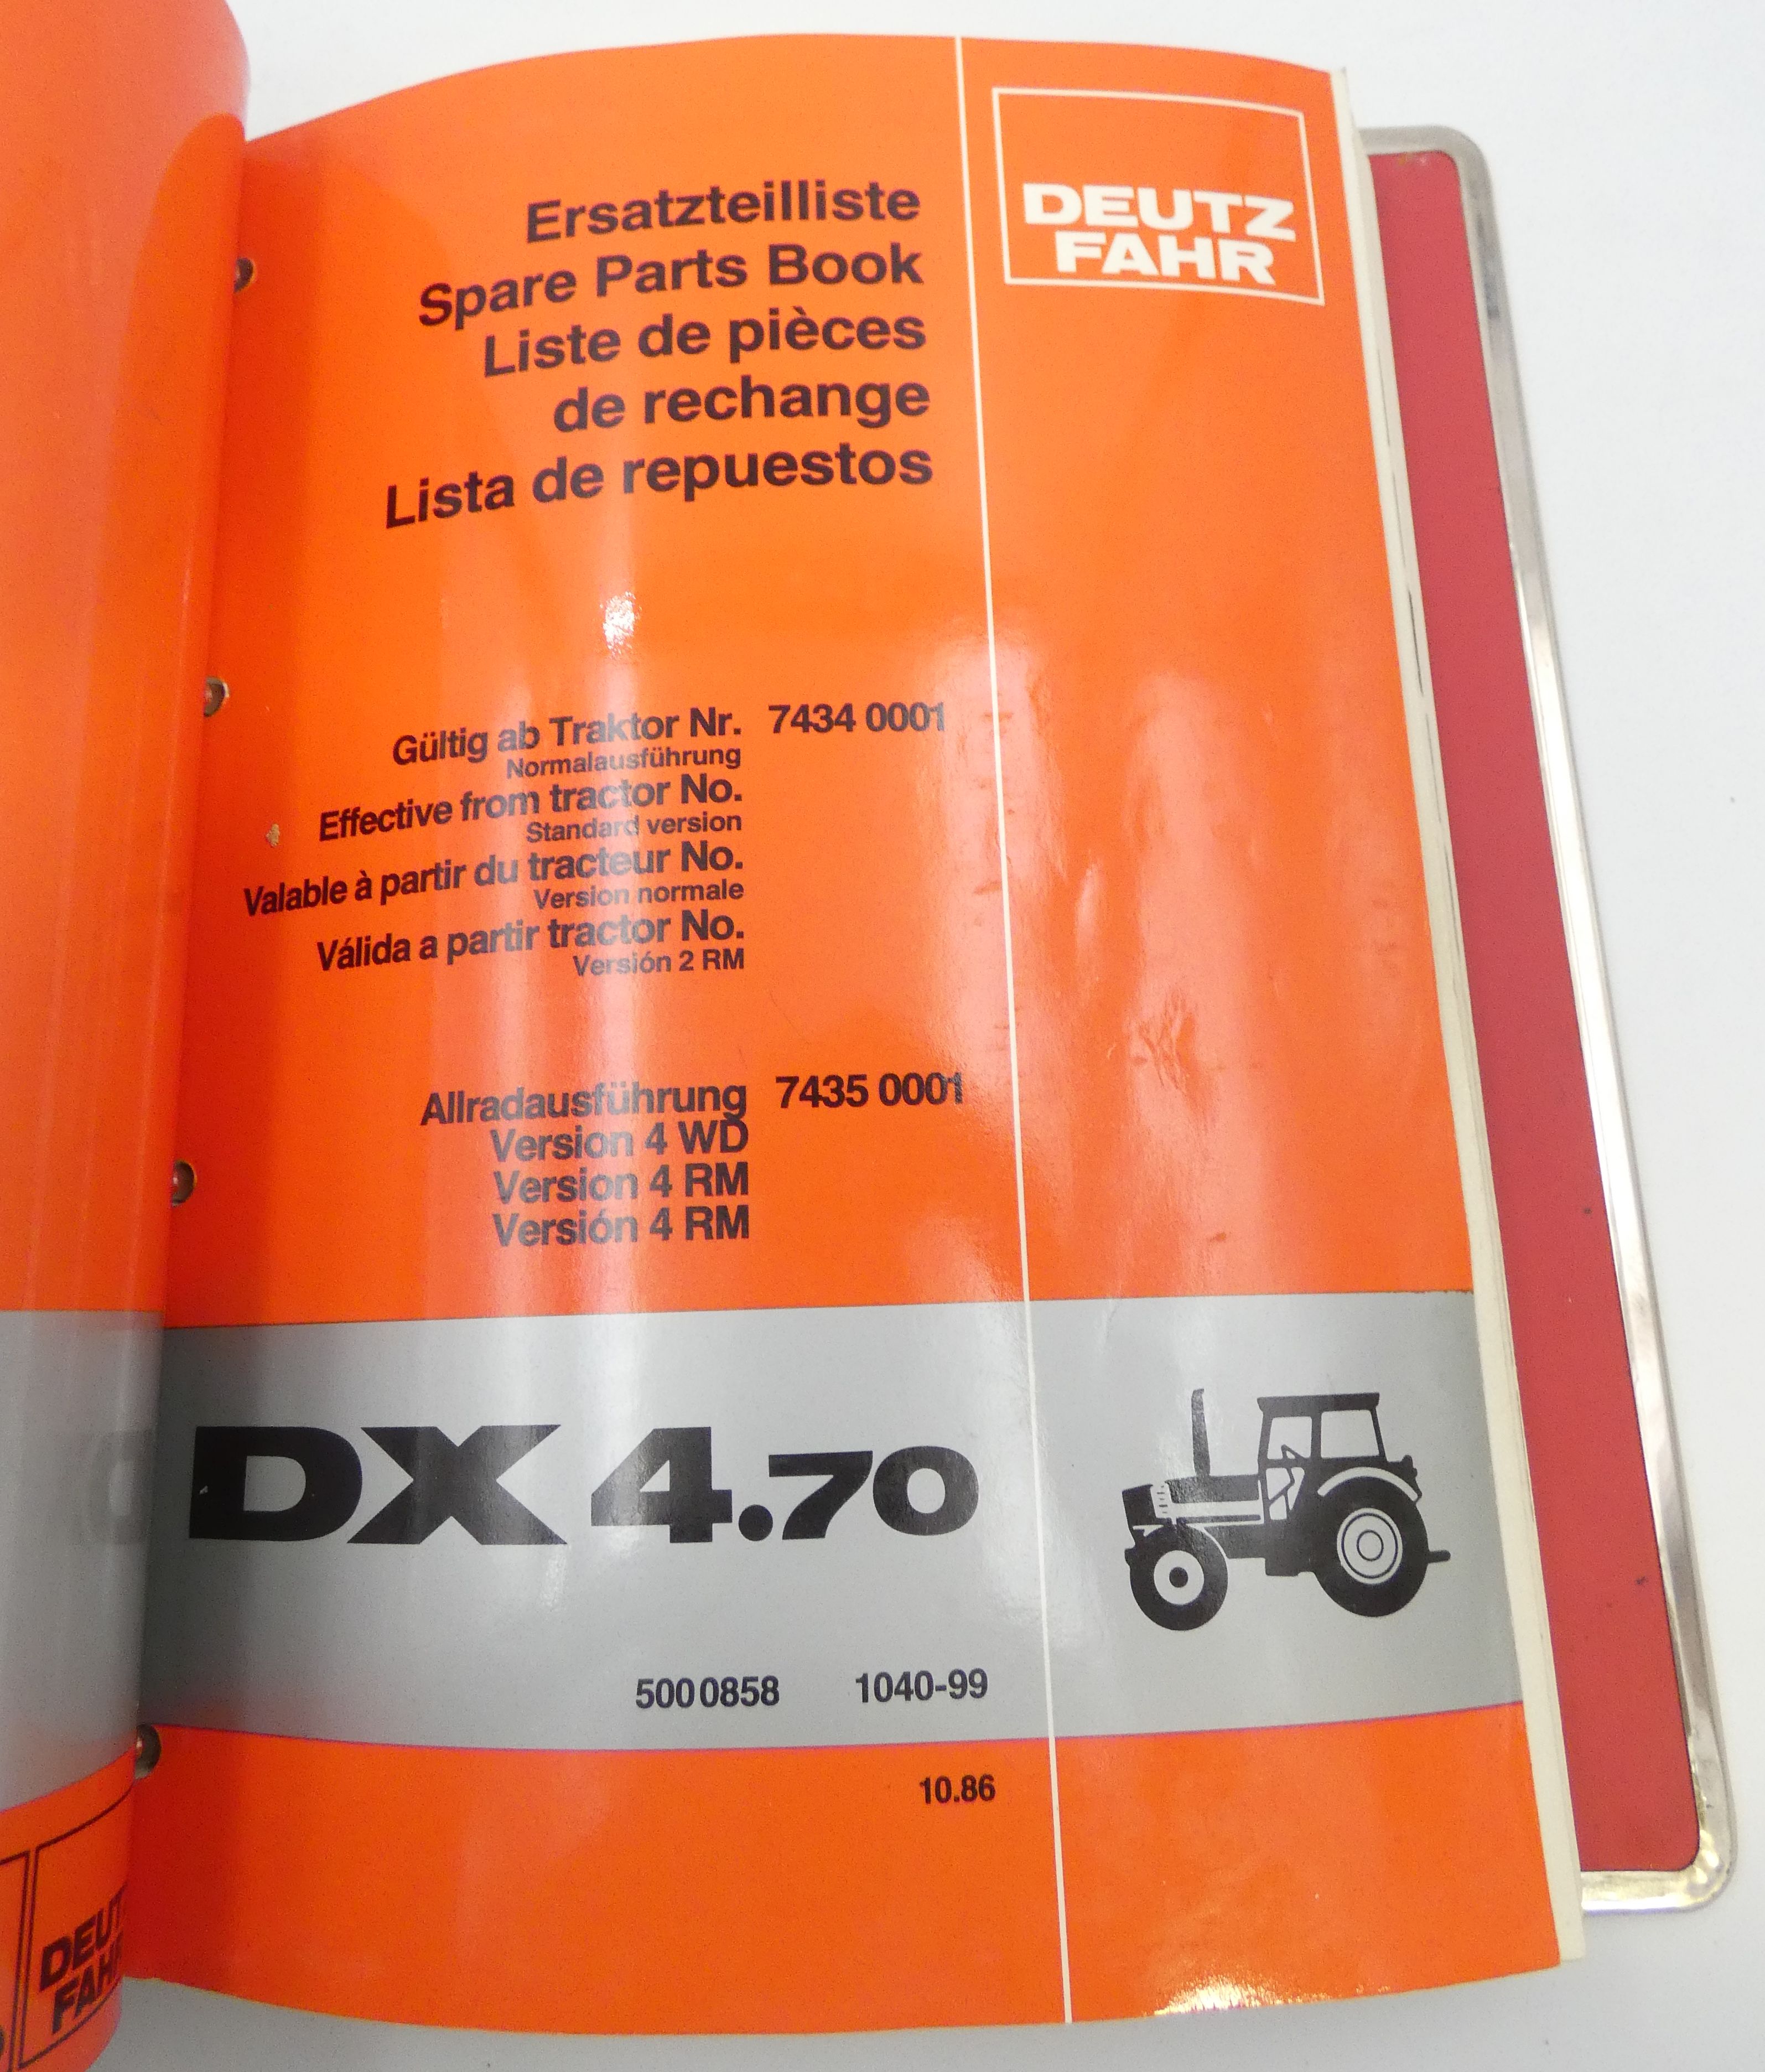 Deutz-Fahr DX4.30, DX4.70 spare parts book